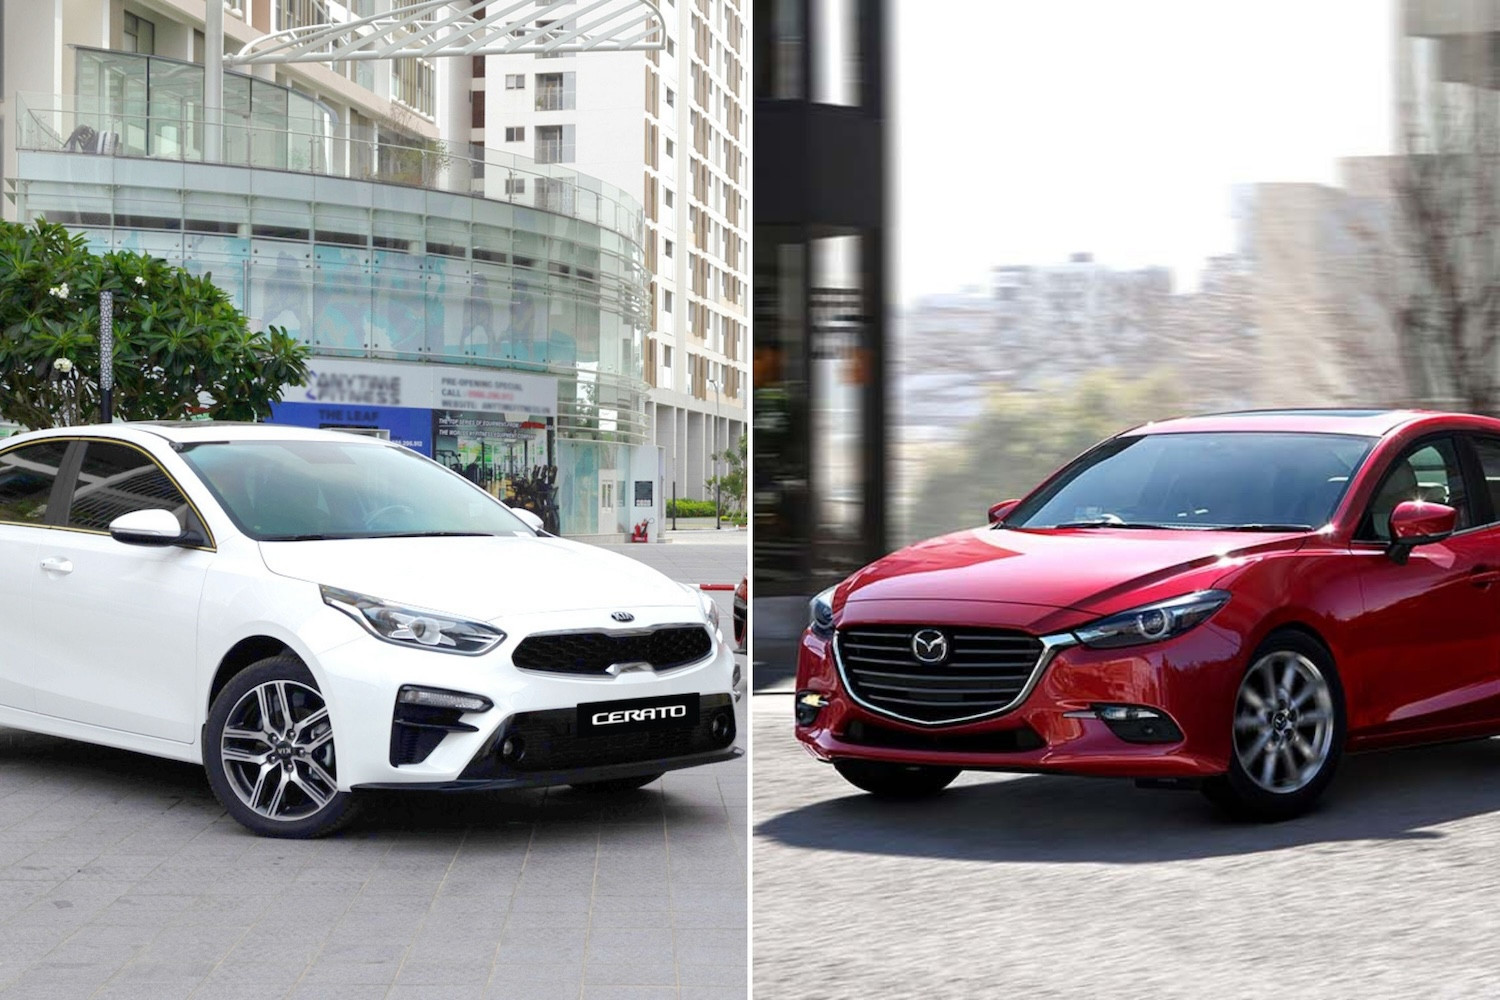 Tài chính khoảng 500 triệu nên chọn Mazda3 hay KIA Cerato đời 2019?